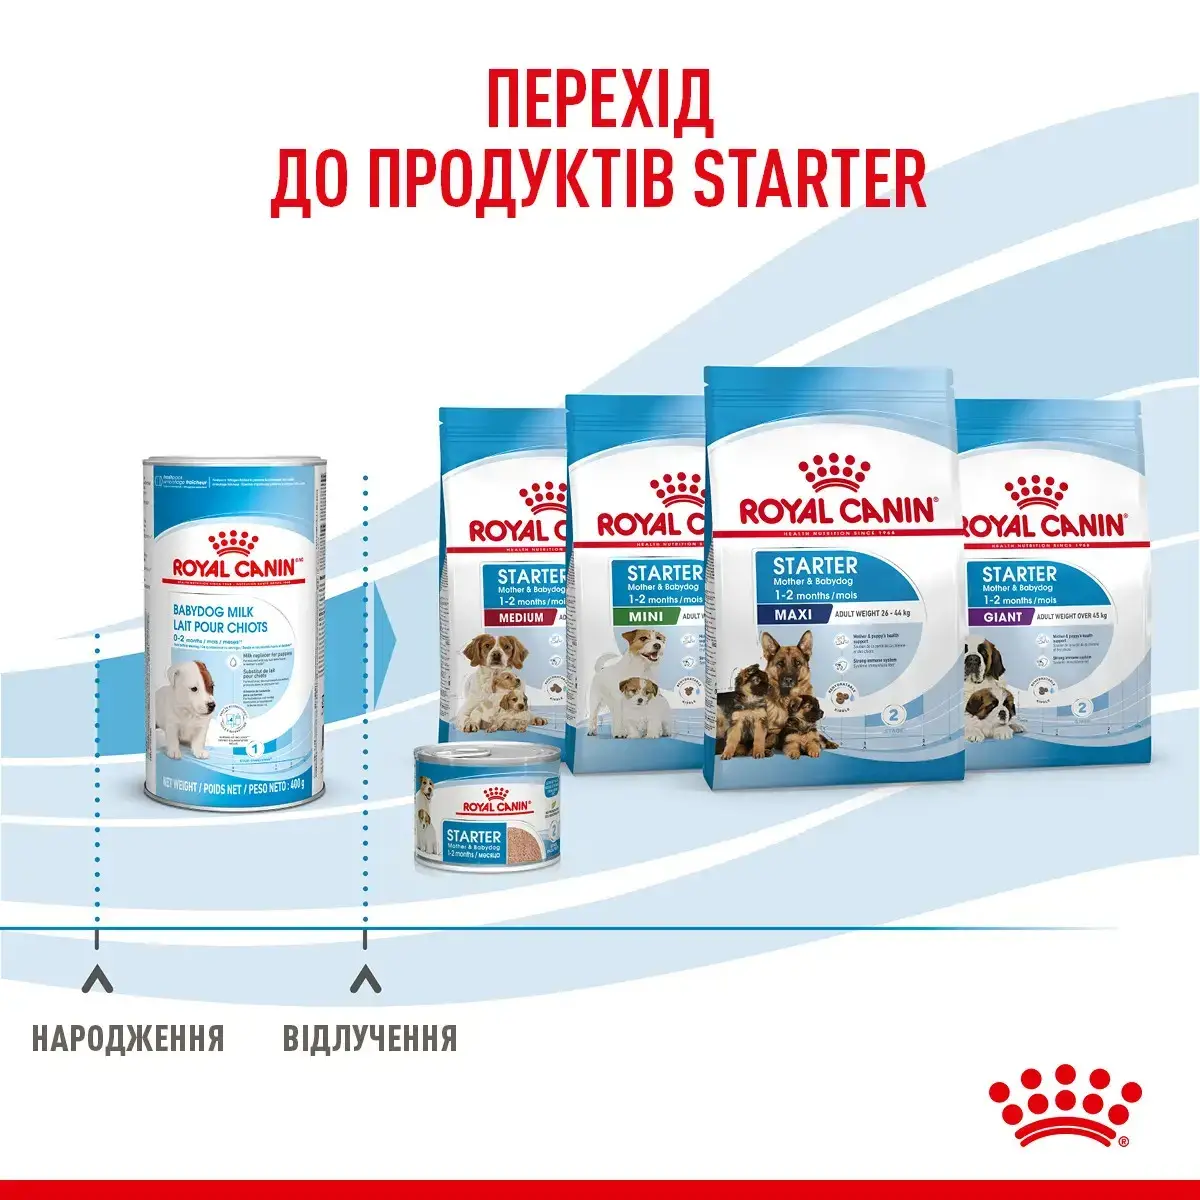 Royal Canin Babydog Milk 2 кг заменитель молока для щенков с рождения до отъема7